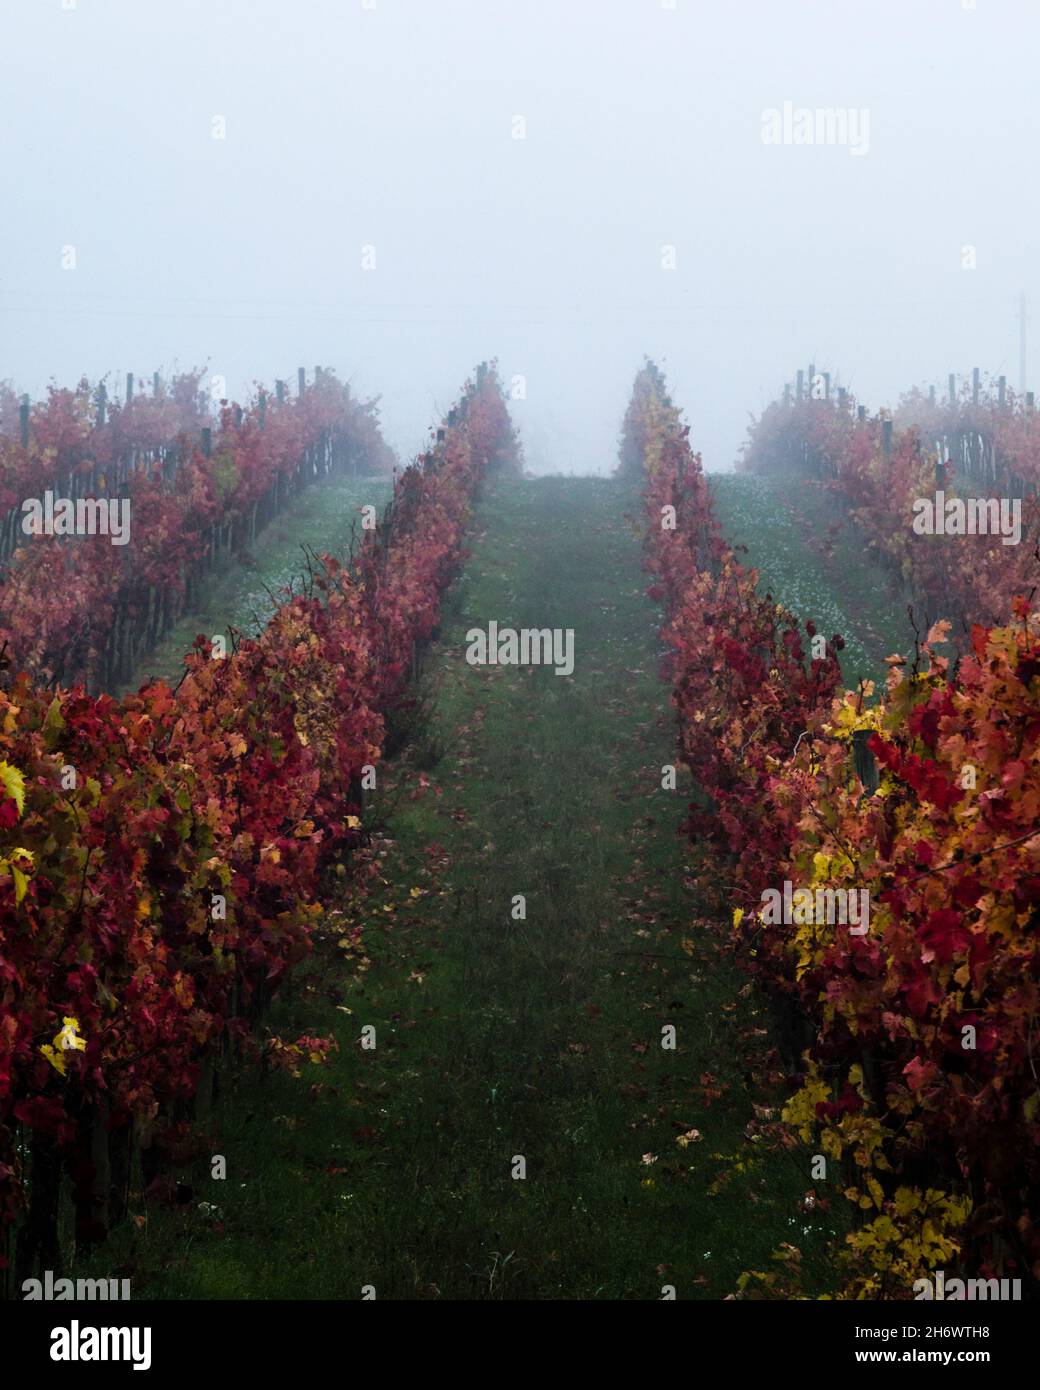 Les vignobles de la fin de l'automne s'embuent, dans la vallée de l'Ombrie, près de Montefalco Banque D'Images